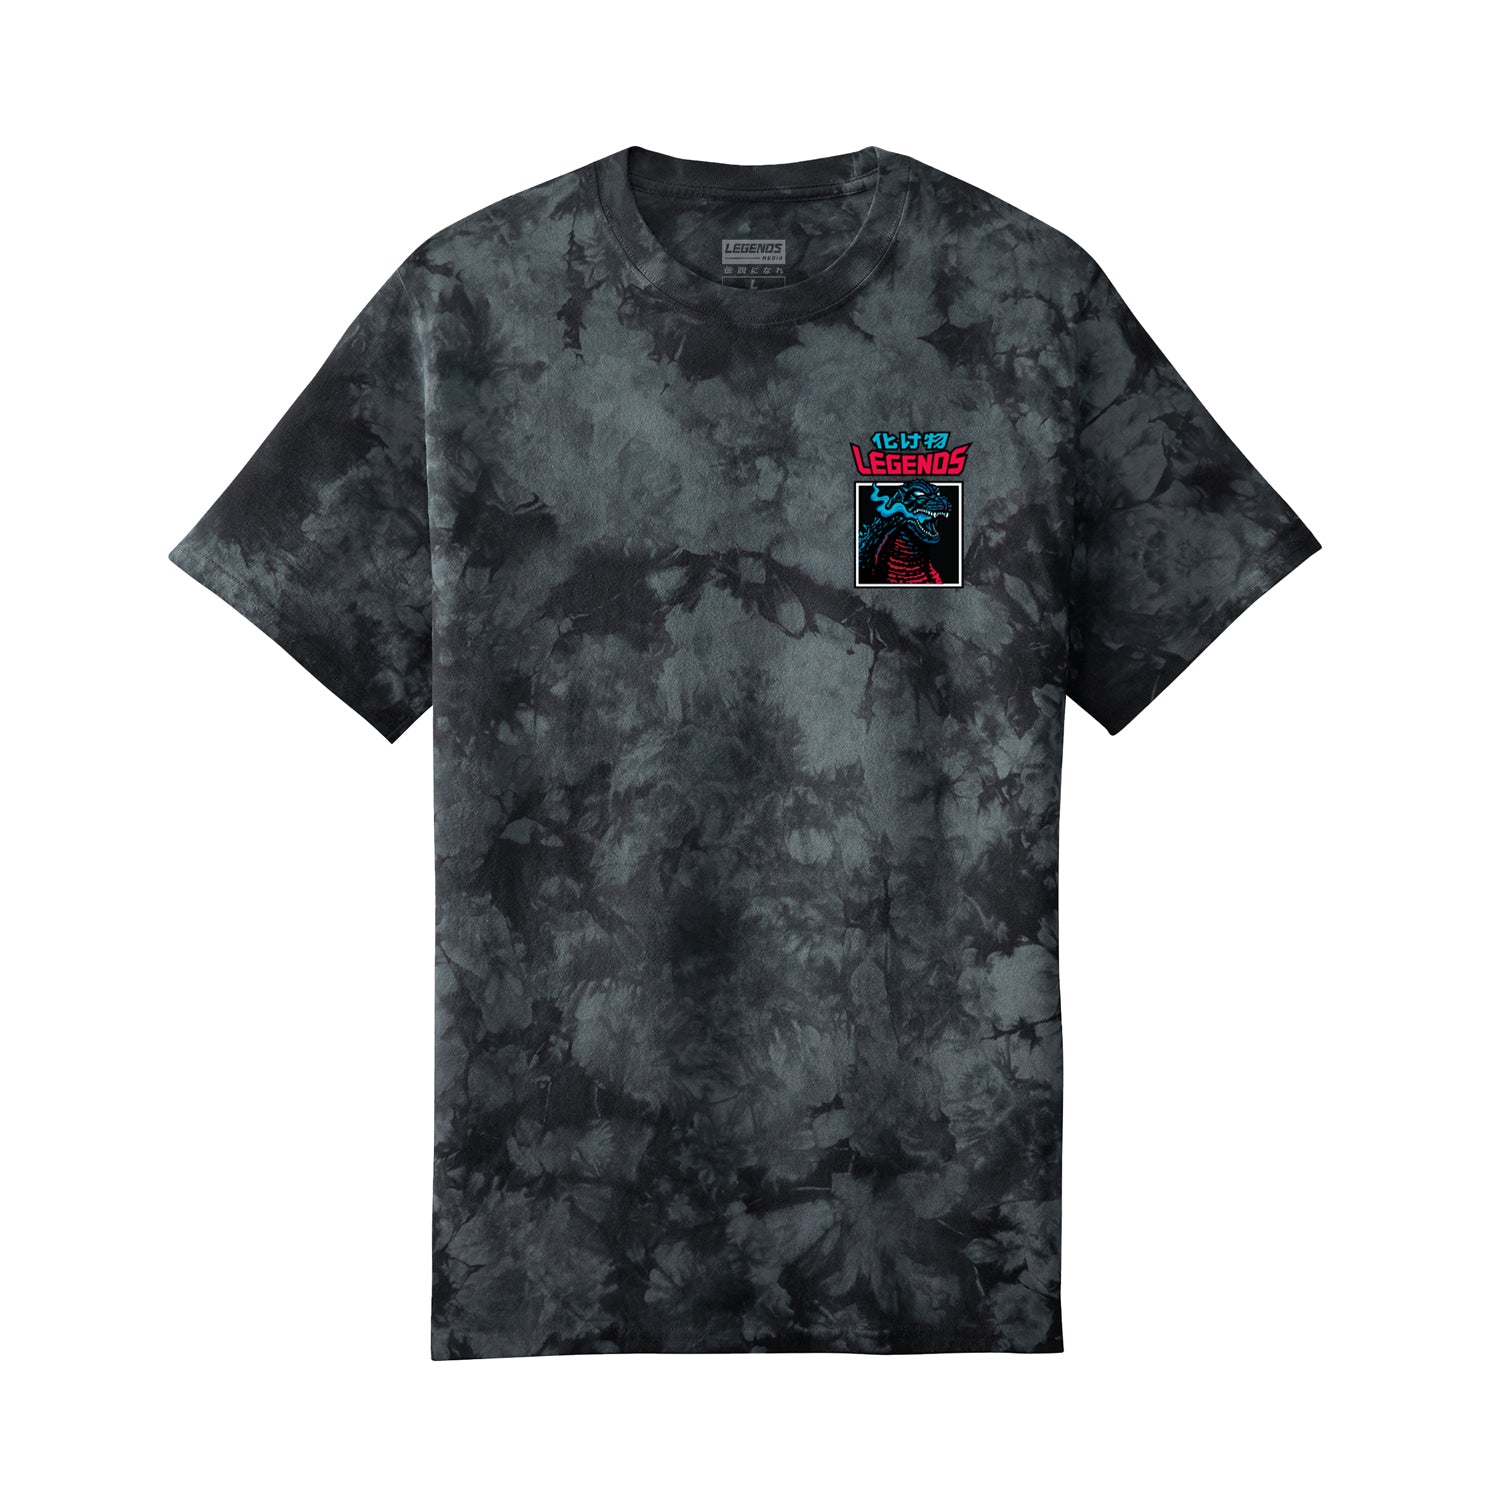 Tshirt - Tie Dye R34 Godzilla